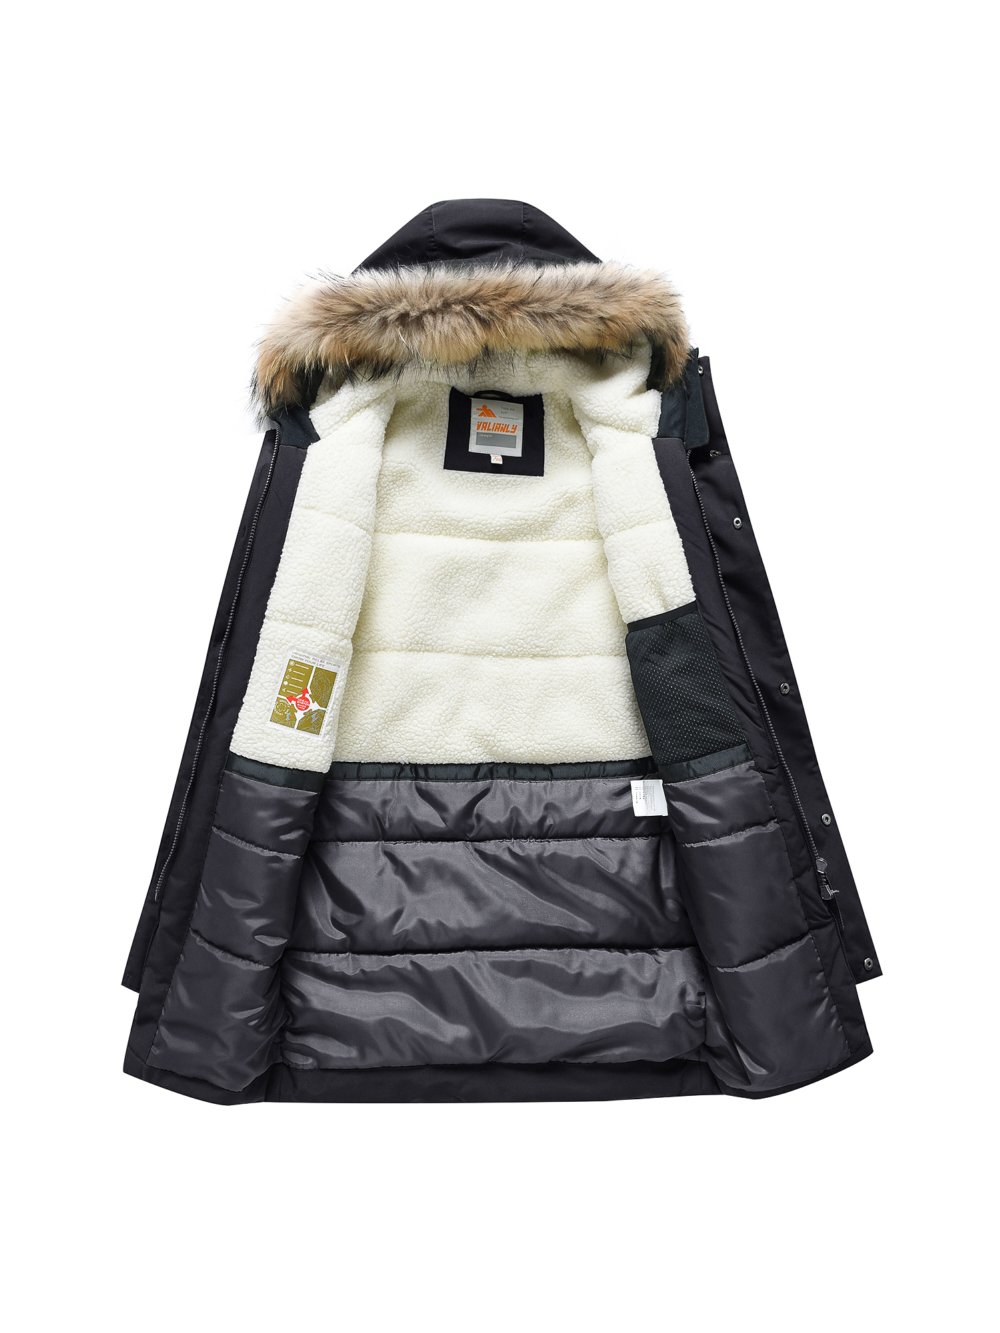 Купить куртку парку для мальчика оптом от производителя недорого в Москве 9343Ch 1